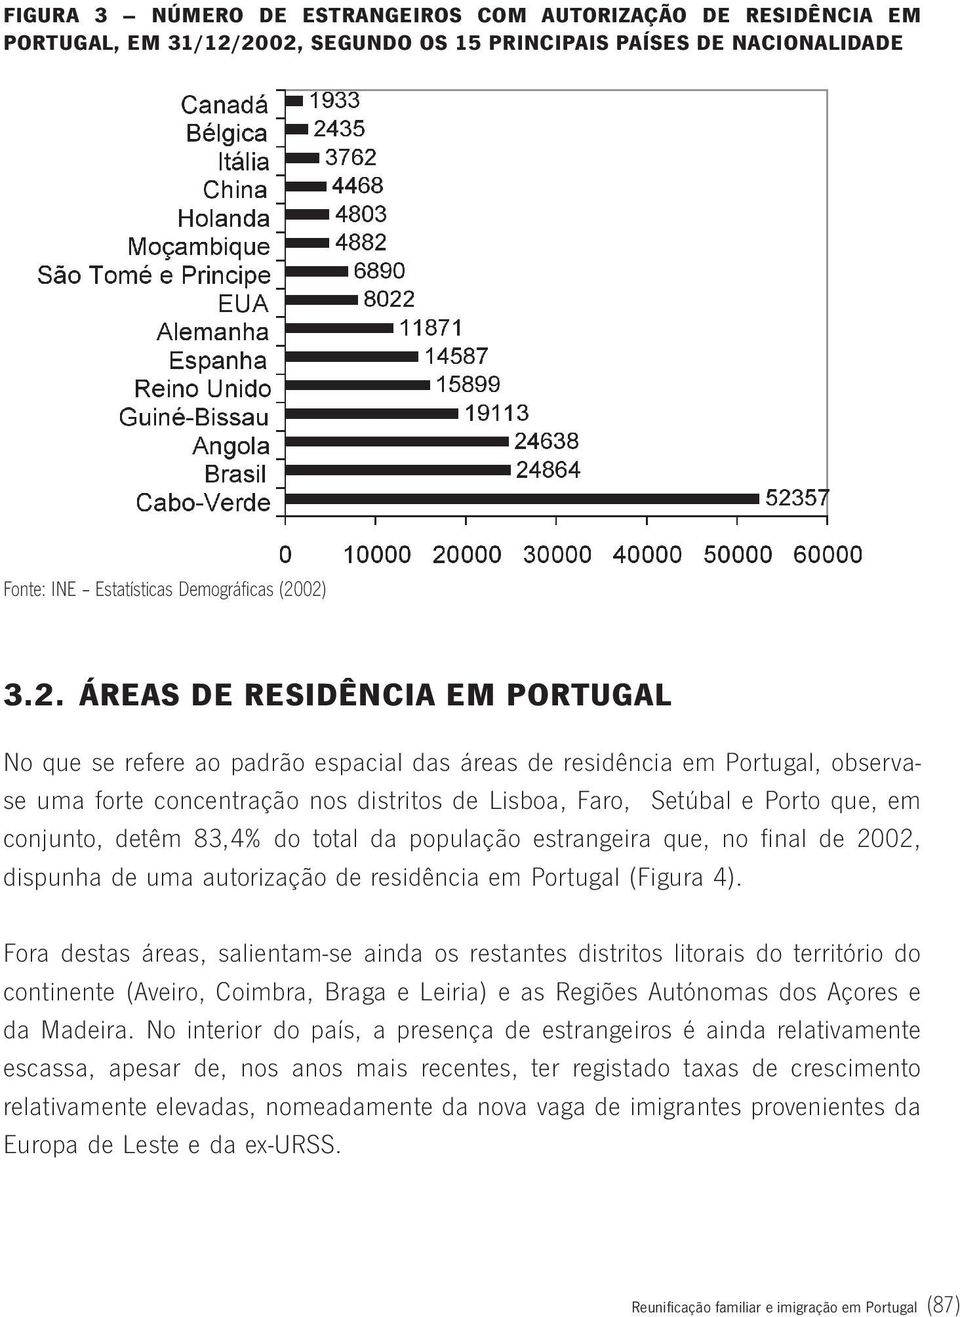 Portugal, observase uma forte concentração nos distritos de Lisboa, Faro, Setúbal e Porto que, em conjunto, detêm 83,4% do total da população estrangeira que, no final de 2002, dispunha de uma